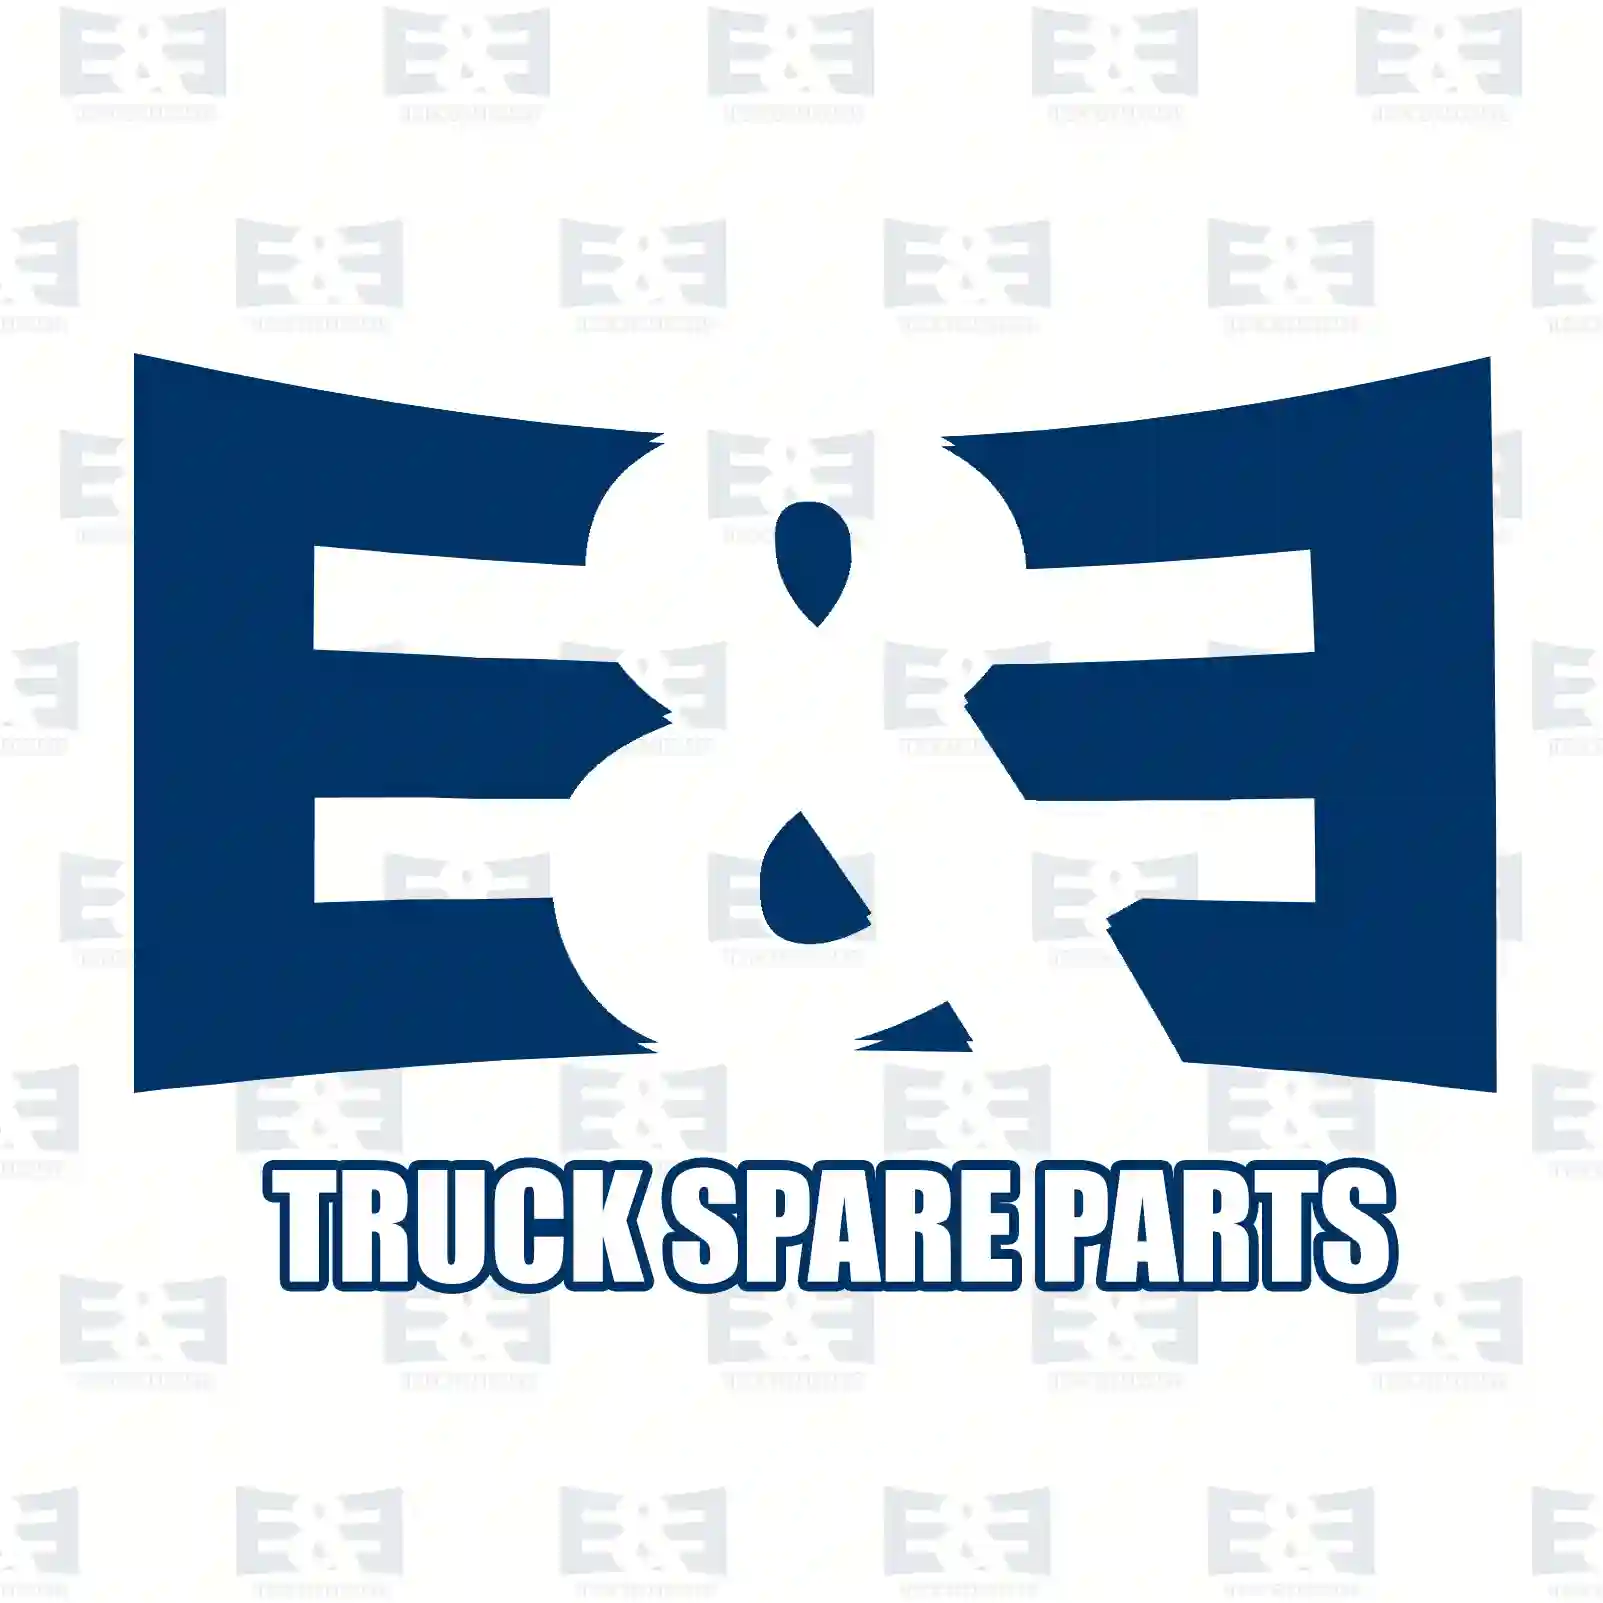 Water drain valve, 2E2296189, 0009970436, 0009970736, 0009976436 ||  2E2296189 E&E Truck Spare Parts | Truck Spare Parts, Auotomotive Spare Parts Water drain valve, 2E2296189, 0009970436, 0009970736, 0009976436 ||  2E2296189 E&E Truck Spare Parts | Truck Spare Parts, Auotomotive Spare Parts